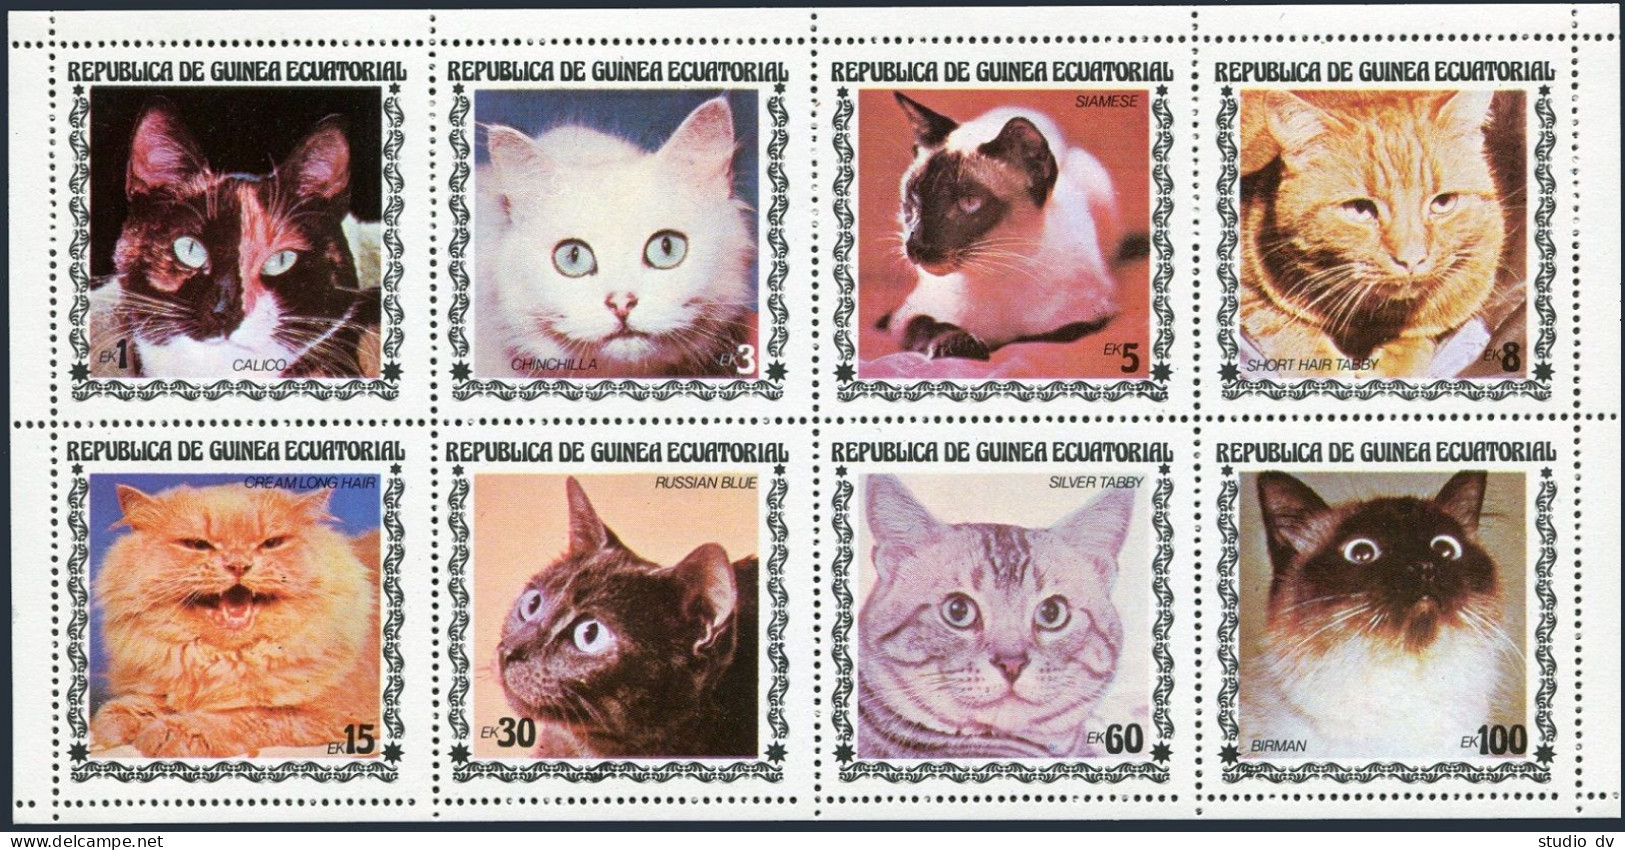 Eq Guinea Michel 1403-1410 Size 187x96,Bl.A309,MNH.Cats - Guinea (1958-...)